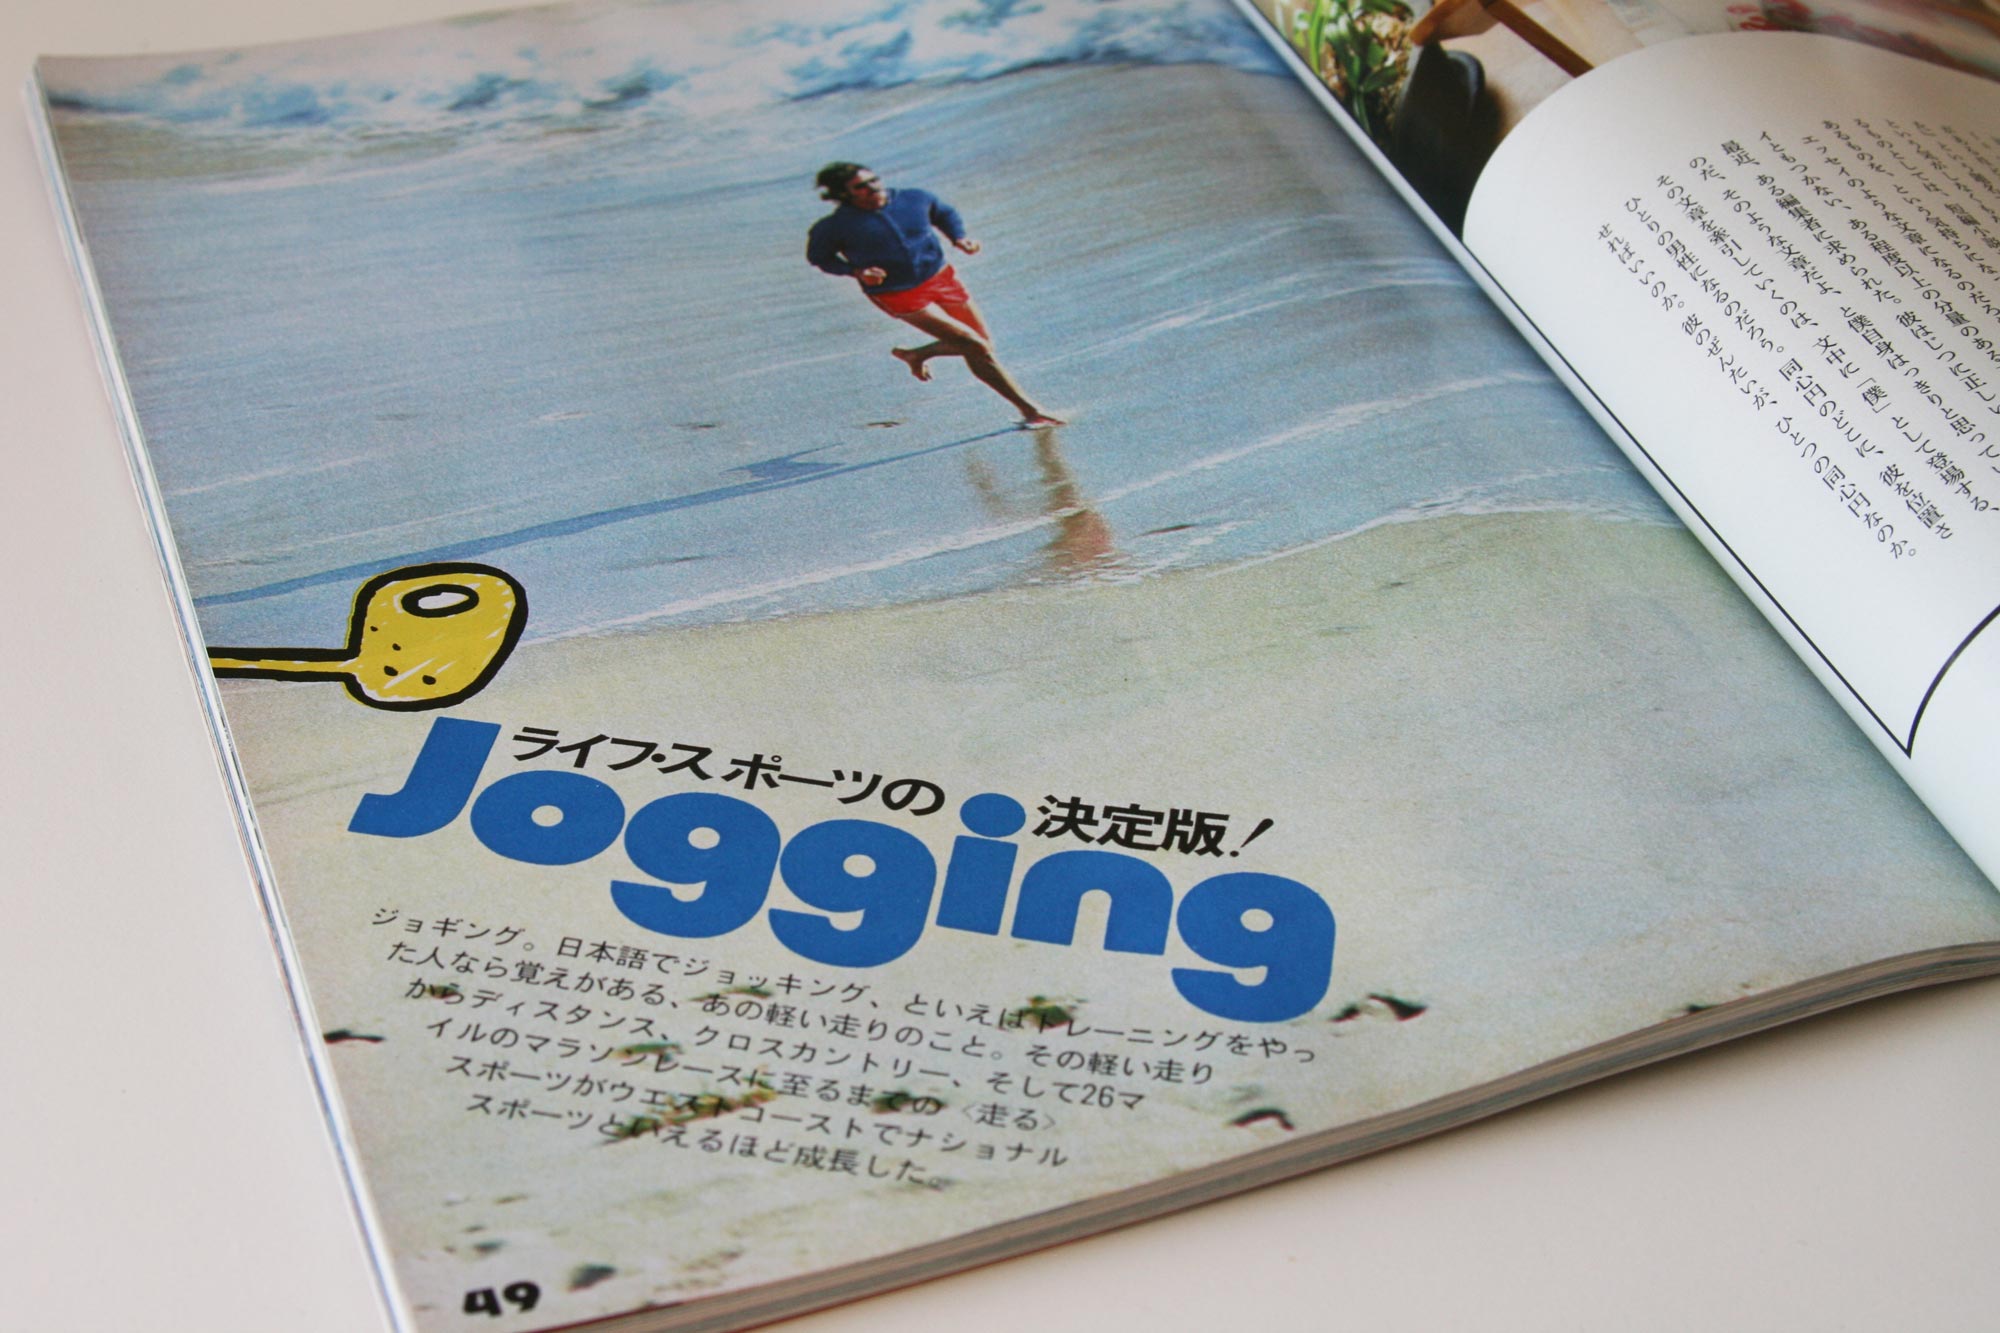 popeye-magazine-jogging_4564